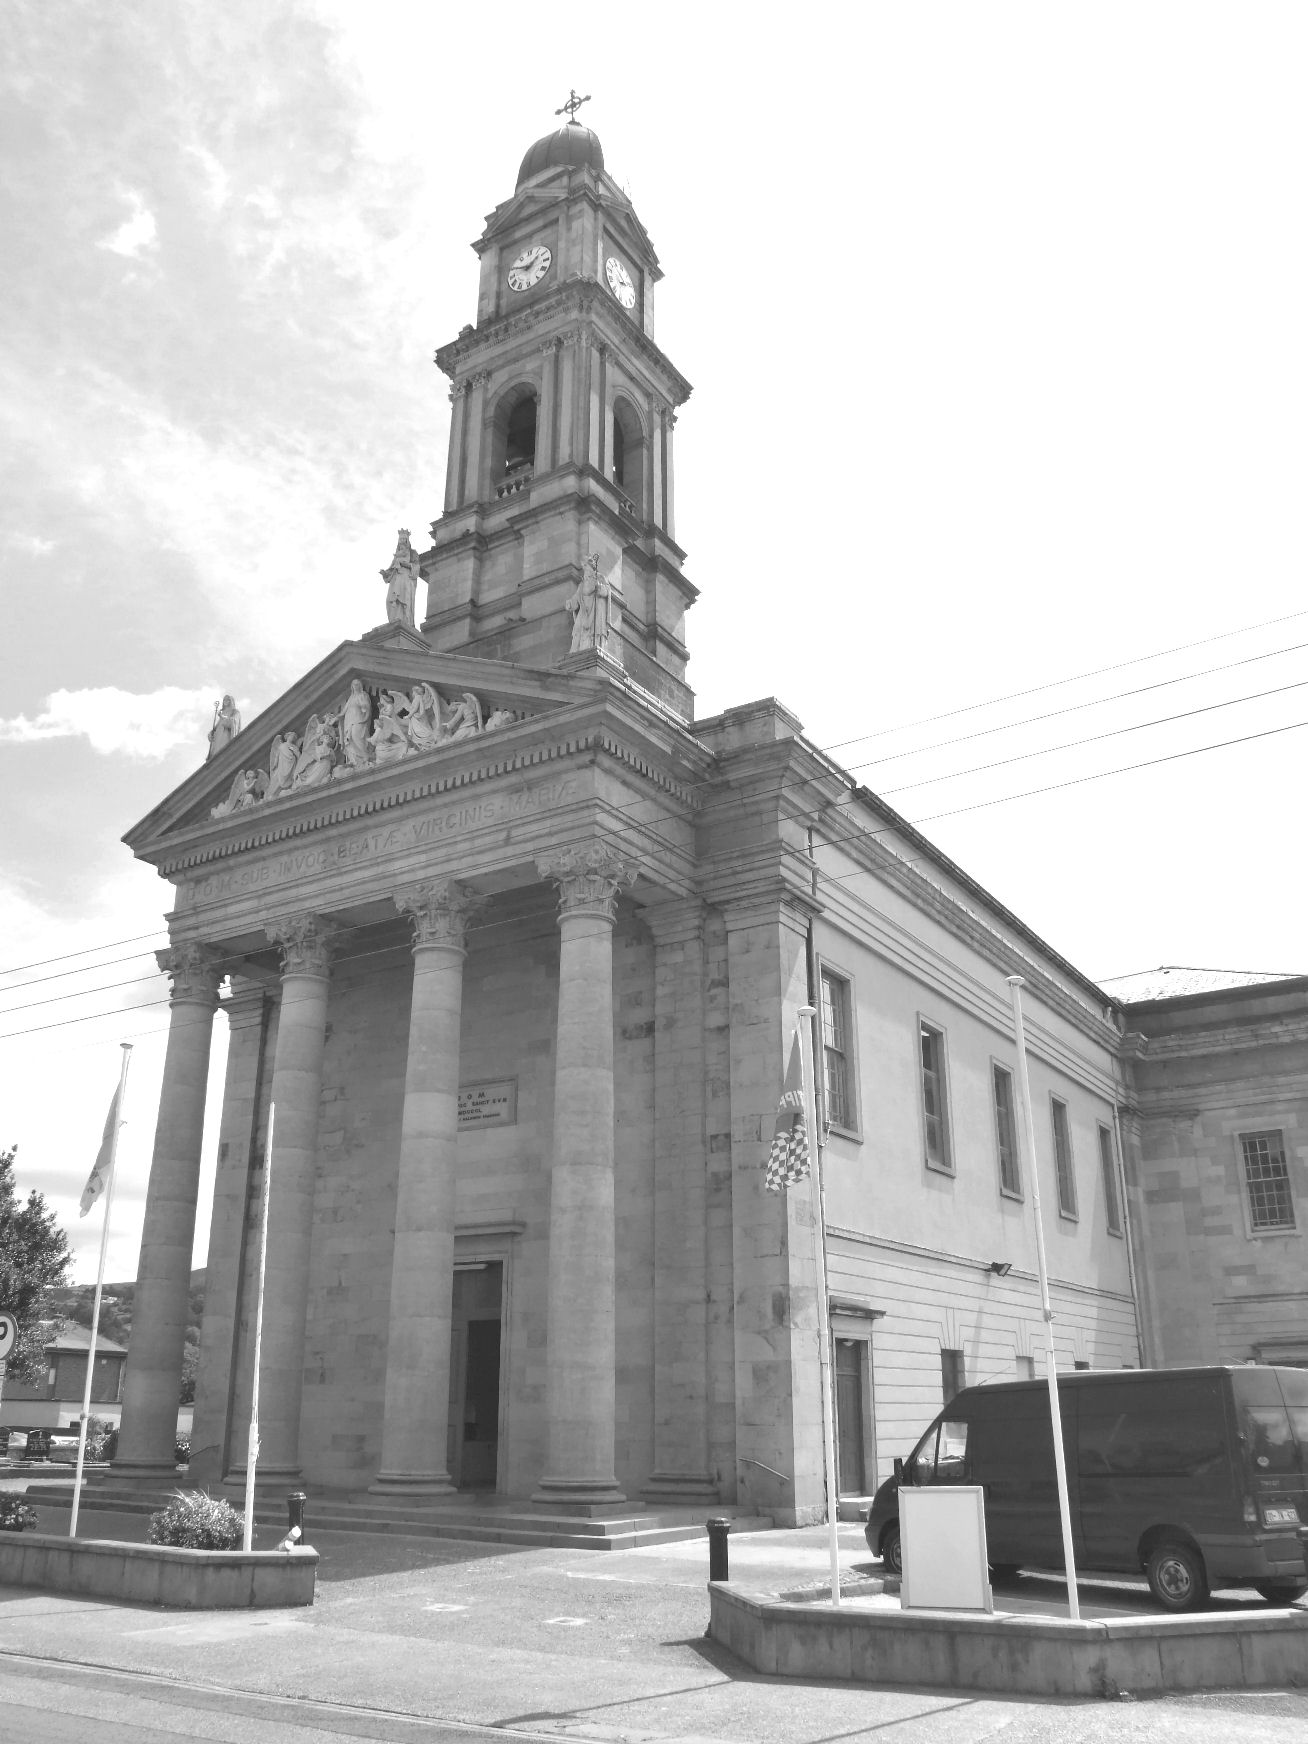 Saint Mary's Church in Clonmel